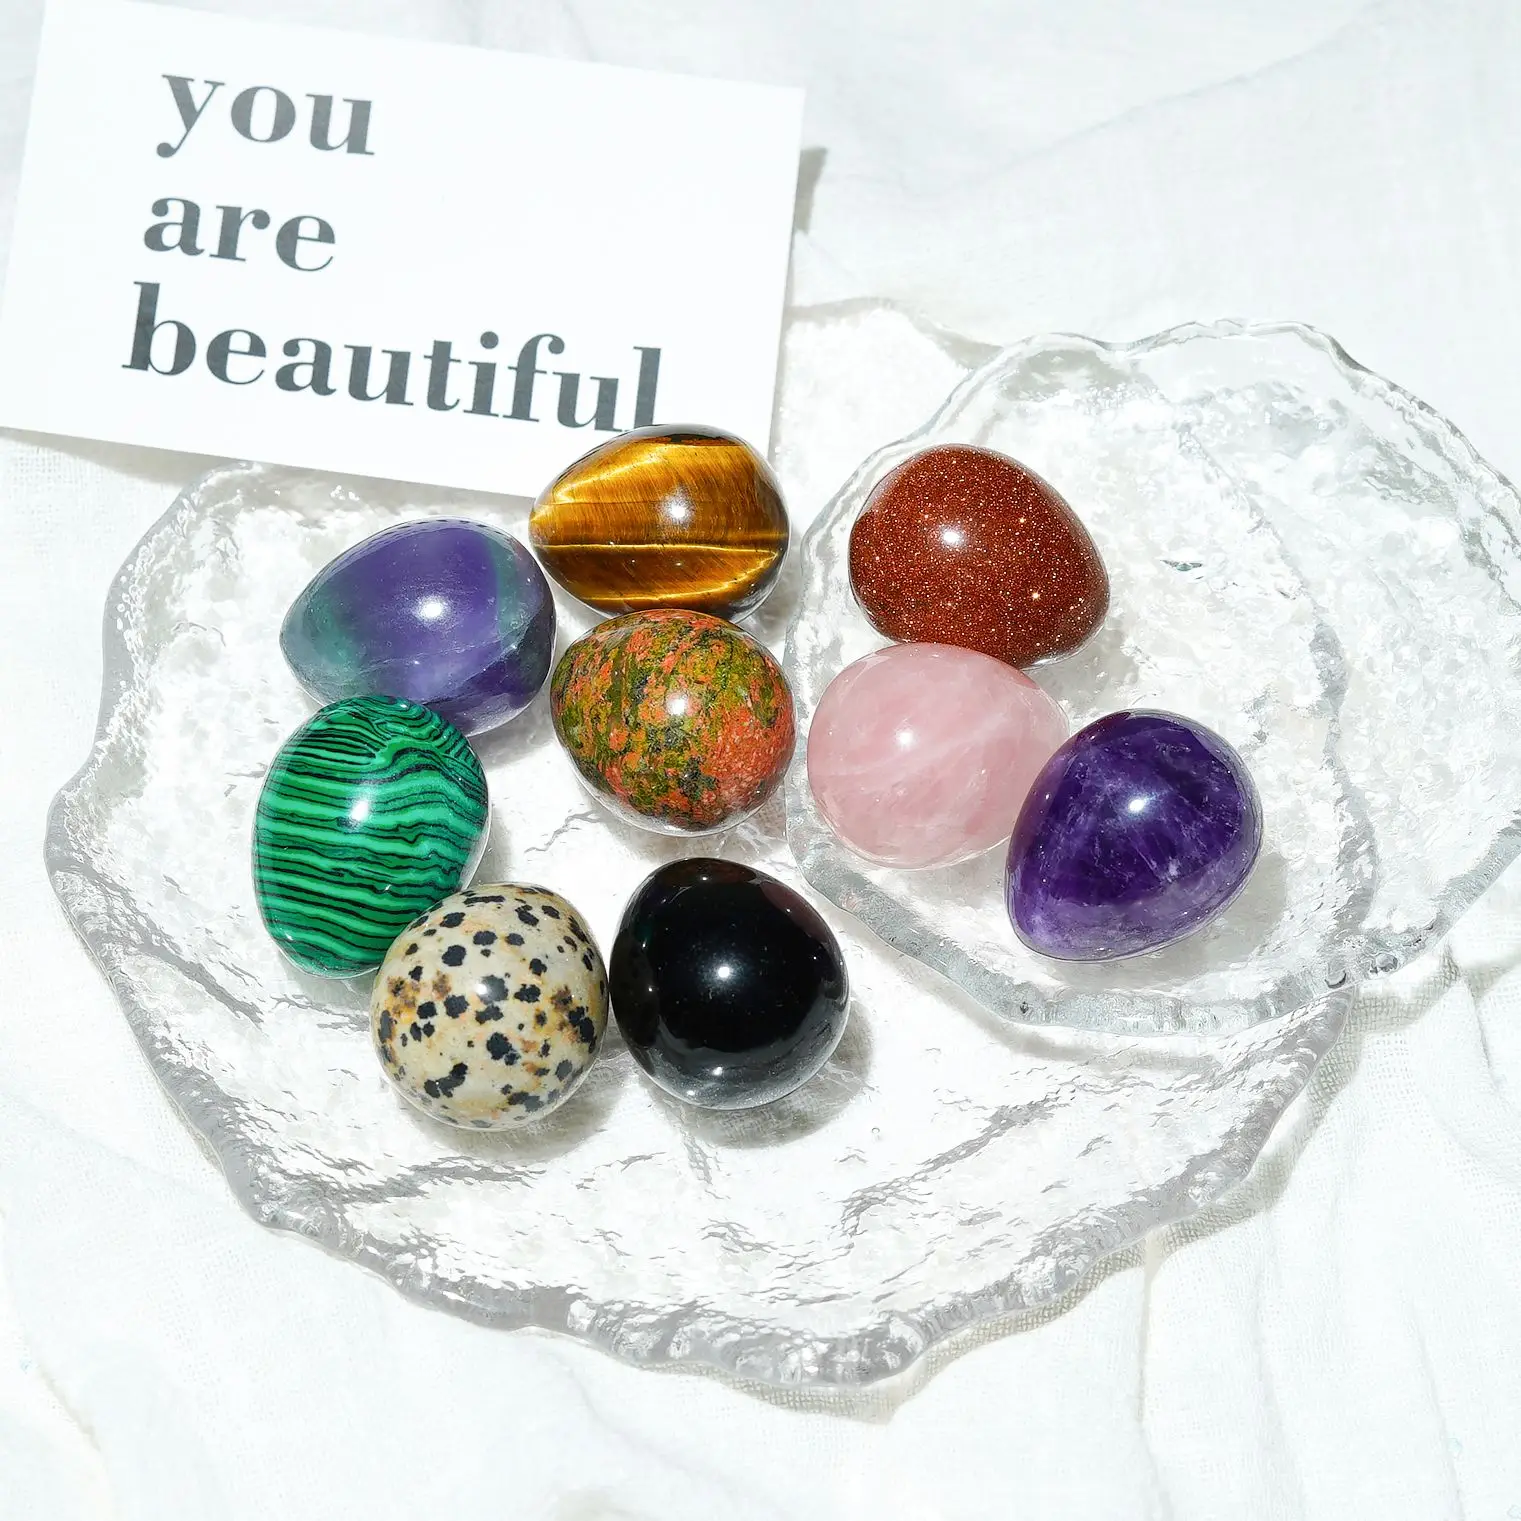 

30x25mm Natural Crystal Polished Egg Gem Stone Reiki Chakra Energy Healing Easter Gift Decoration Specimen